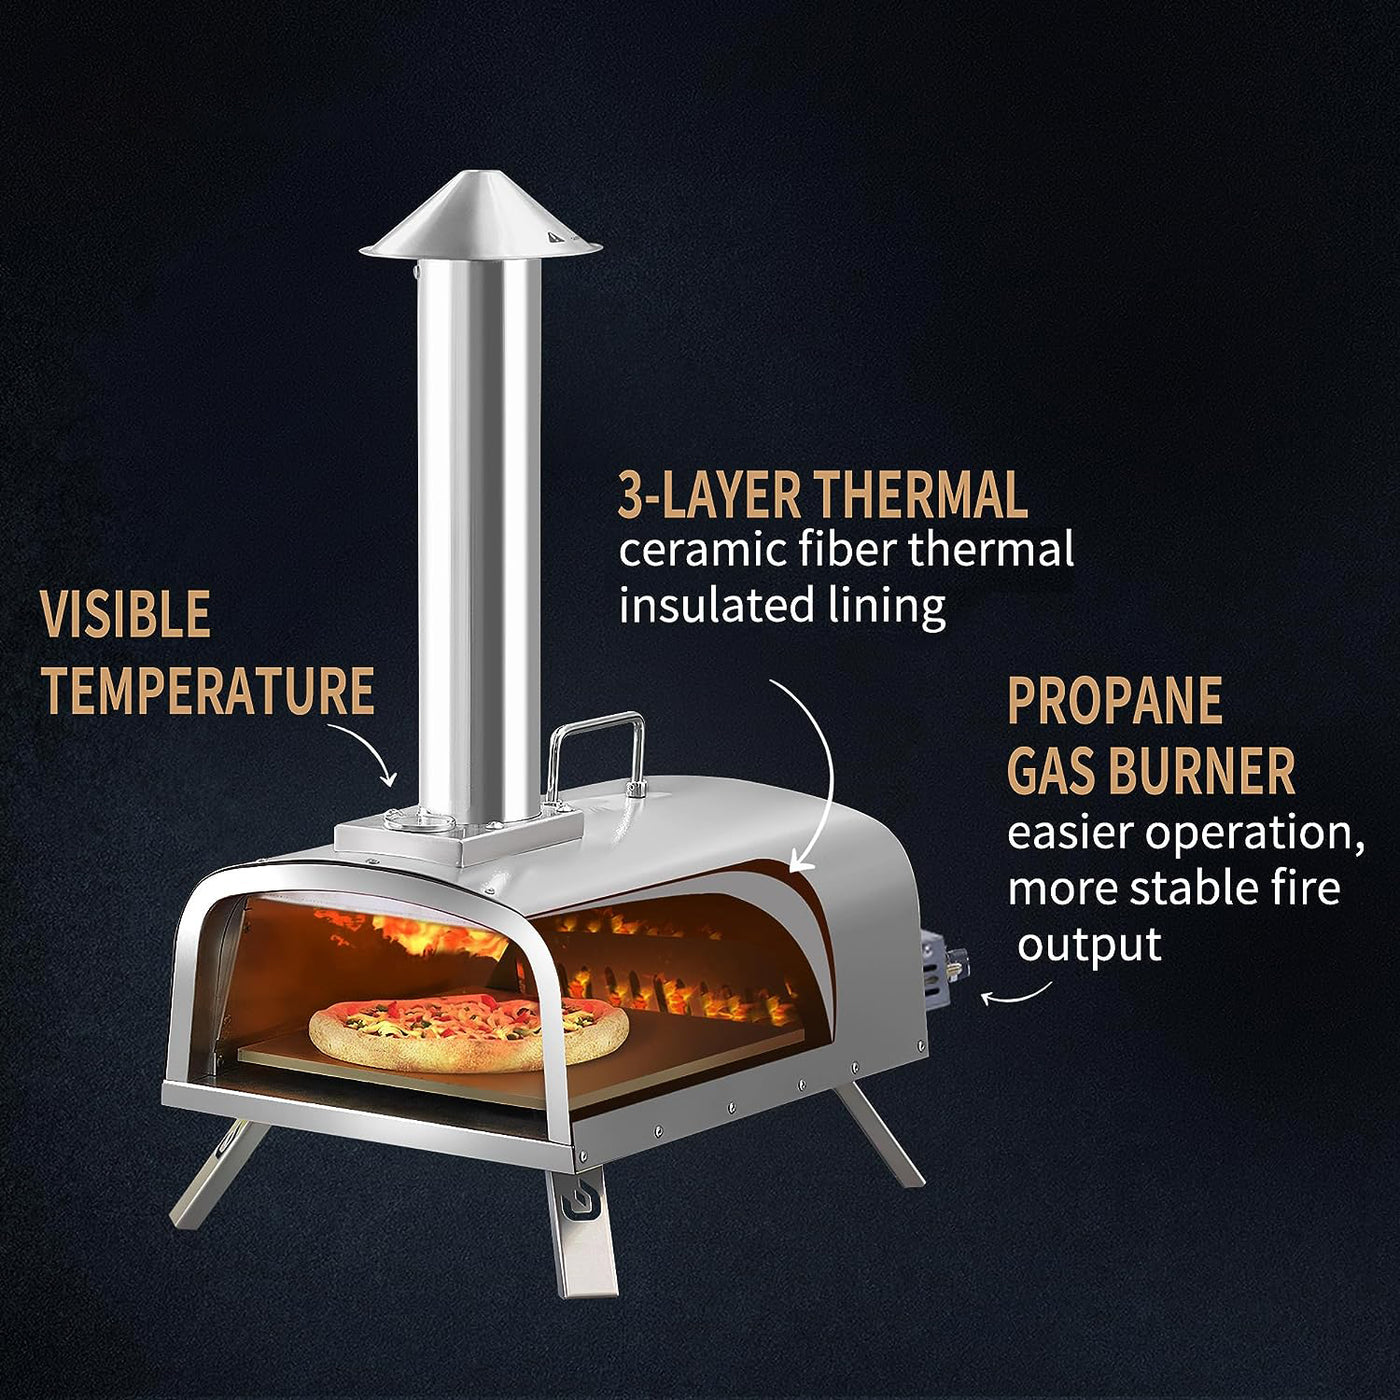 Multi-Fuel Pizza Oven